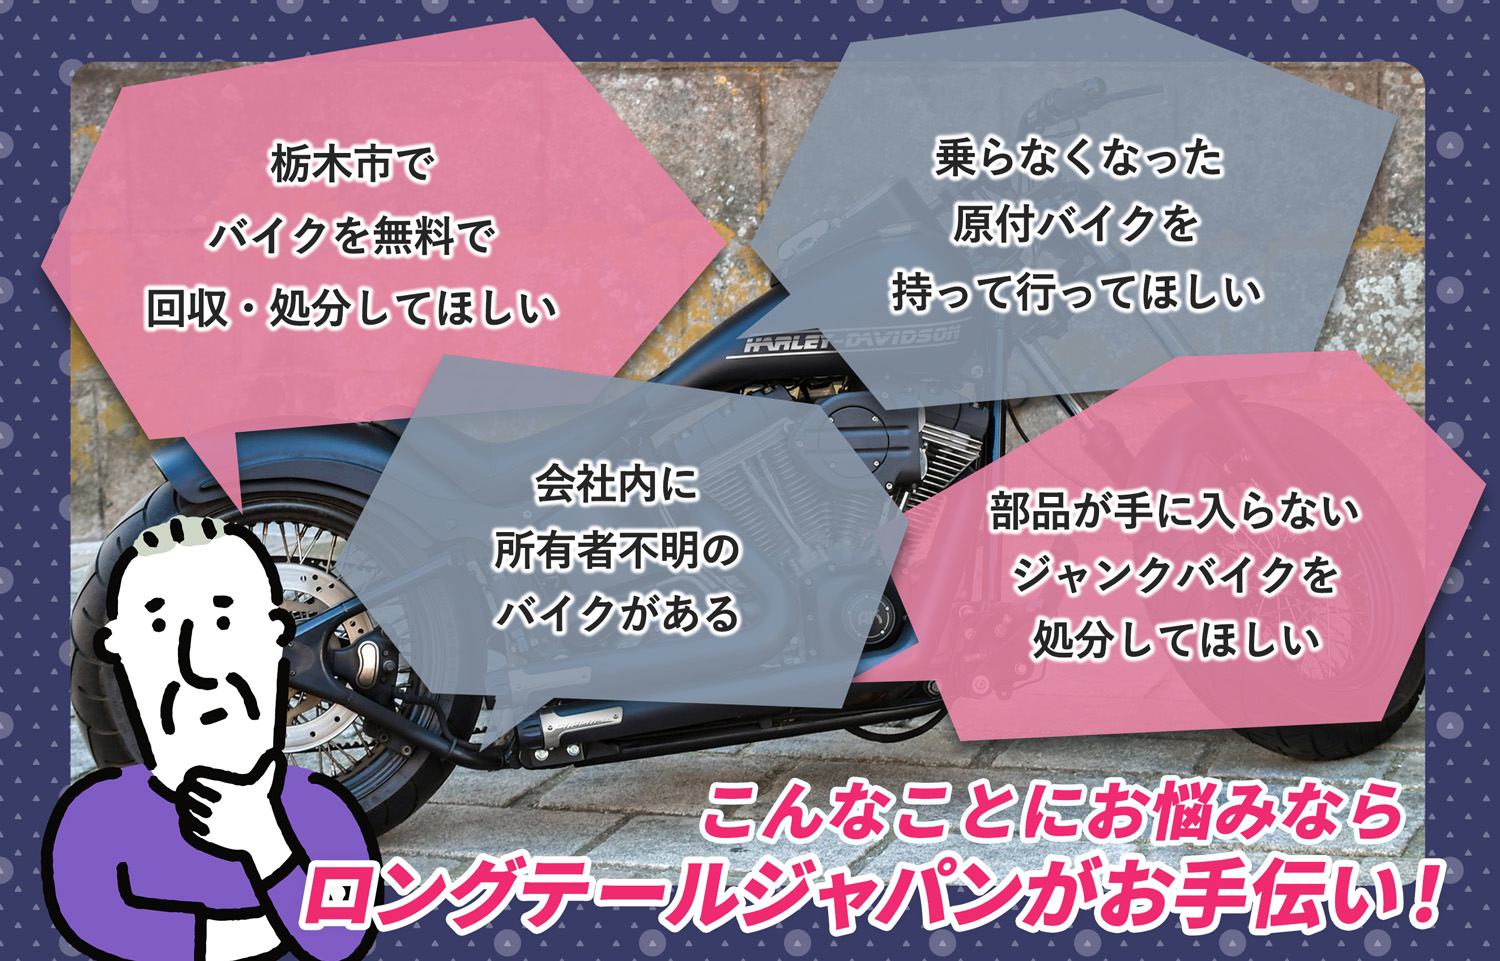 栃木市でこんなバイクの処分にお困りでしたらバイク無料回収処分隊がお手伝いいたします。